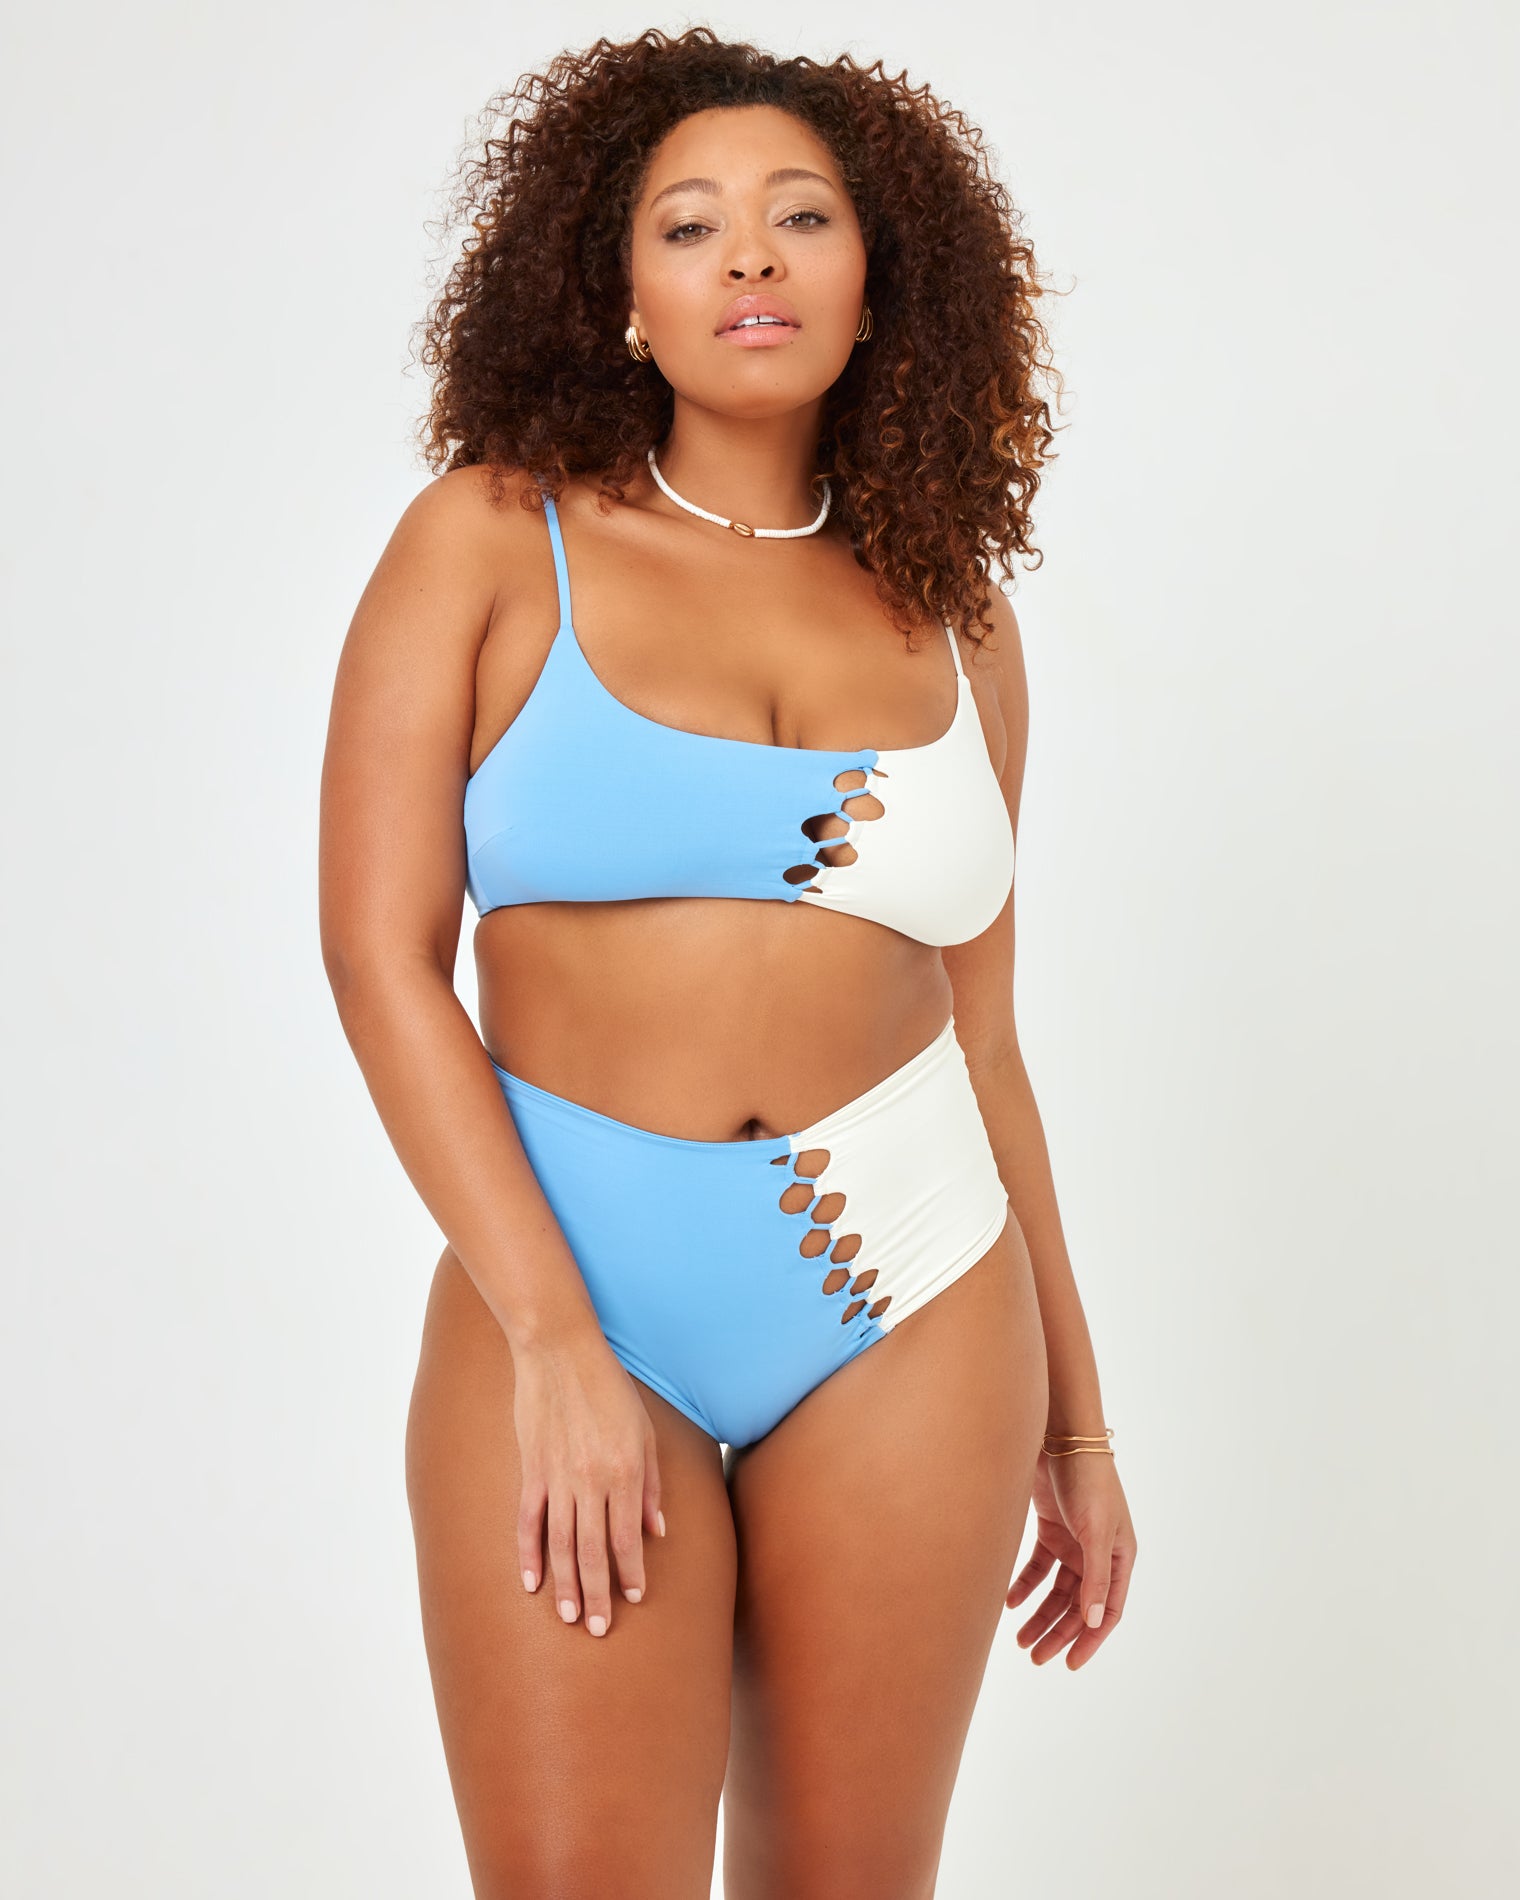 Solstice Bikini Top - Aura-Cream Aura-Cream | Model: Amber (size: XL)